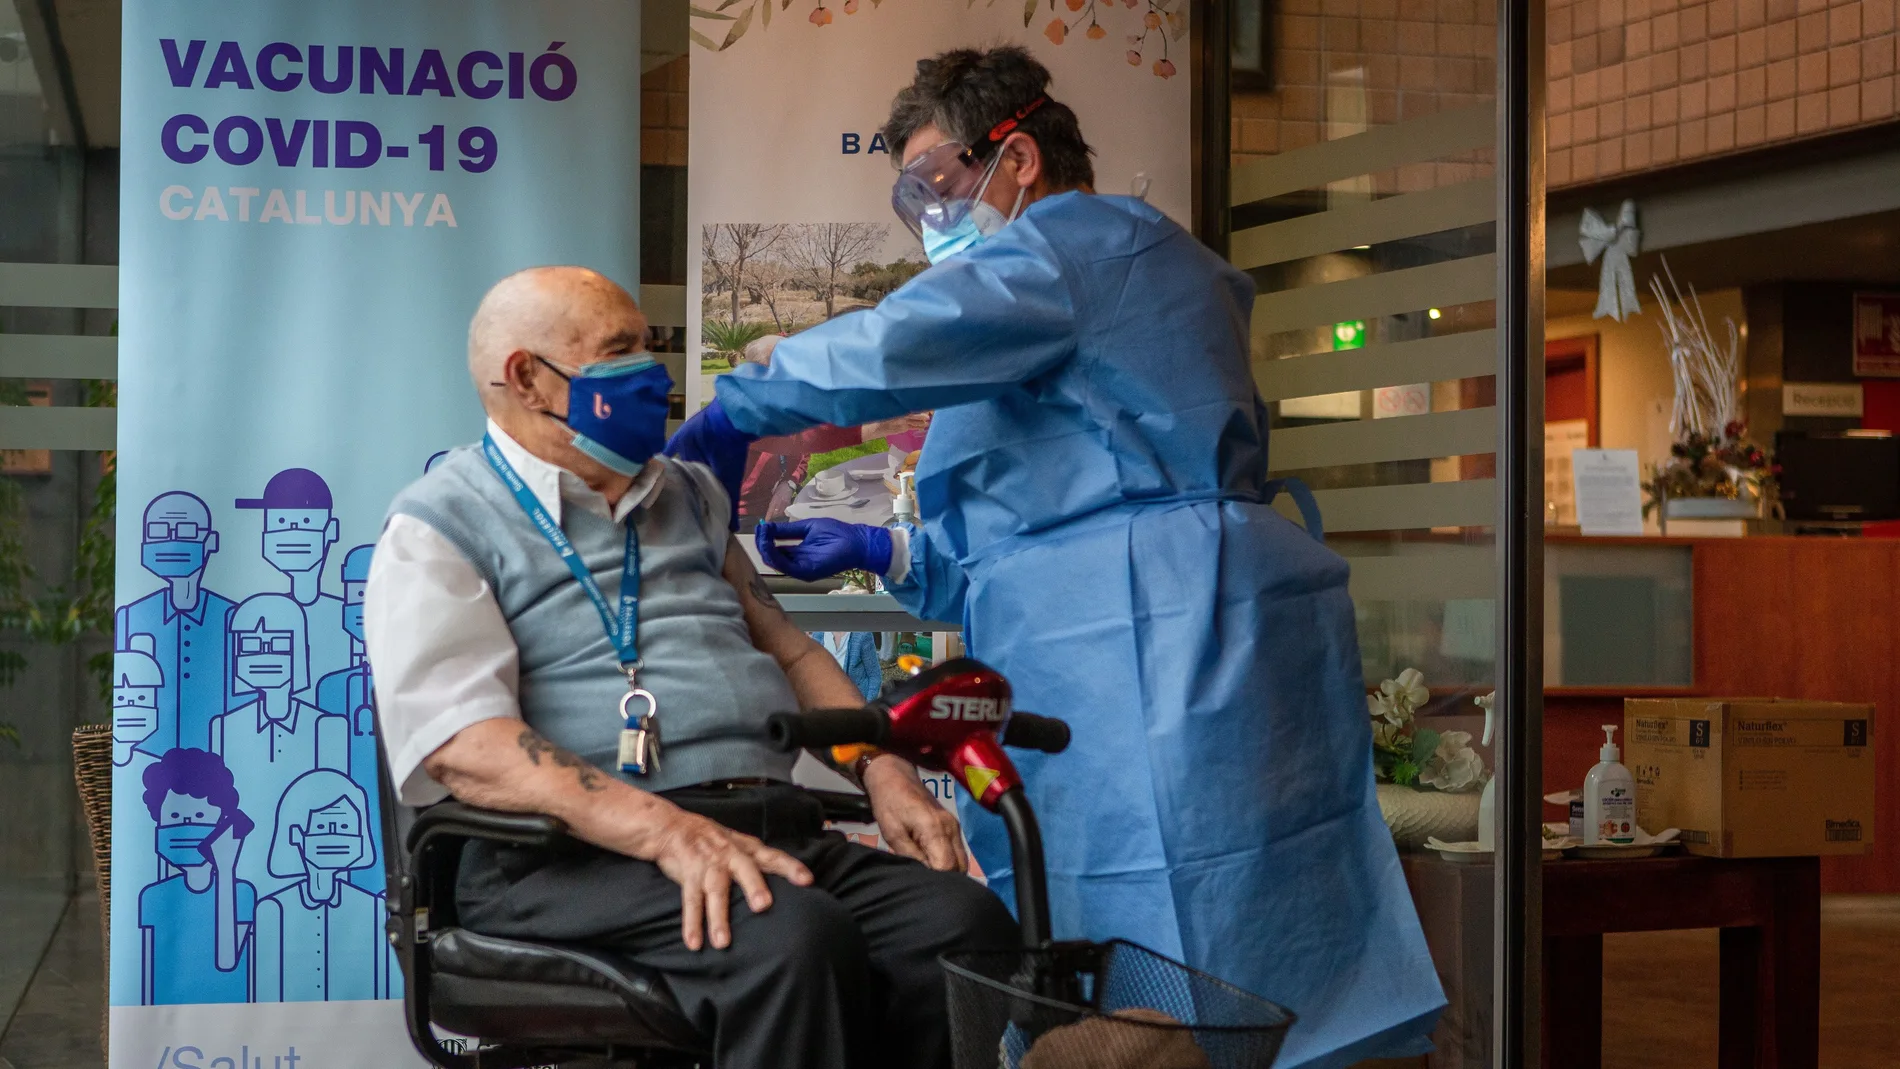 GRAFCAT6563 Badalona (BARCELONA).- Rafael Perea, de 94 años de edad y residente en el Centro de la tercera edad Ballesol de Badalona (Barcelona), fue el primero al que se le ha administrado la vacuna Pfizer contra el coronaviurs en la ciudad de Badalona